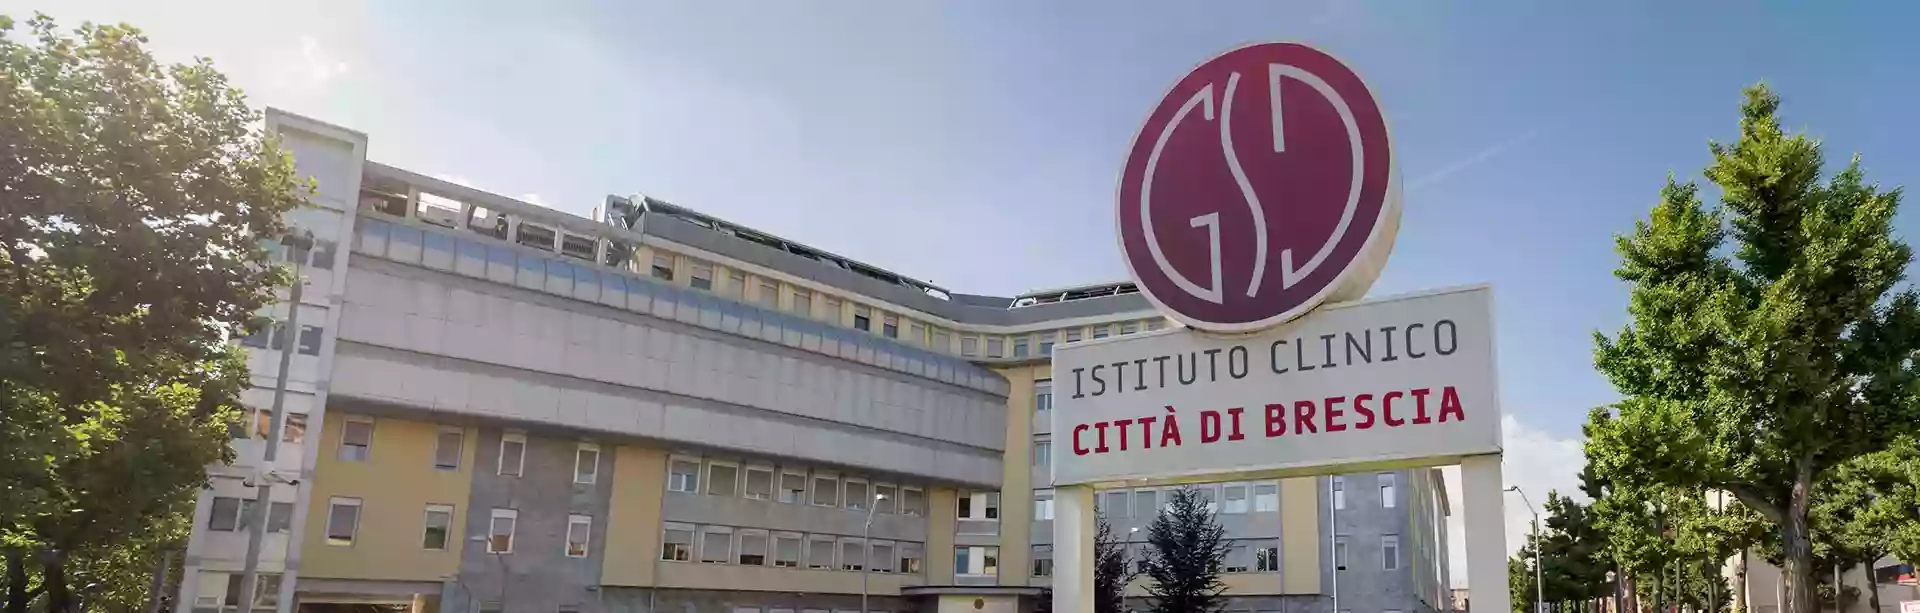 Istituto Clinico Città di Brescia : Pronto Soccorso